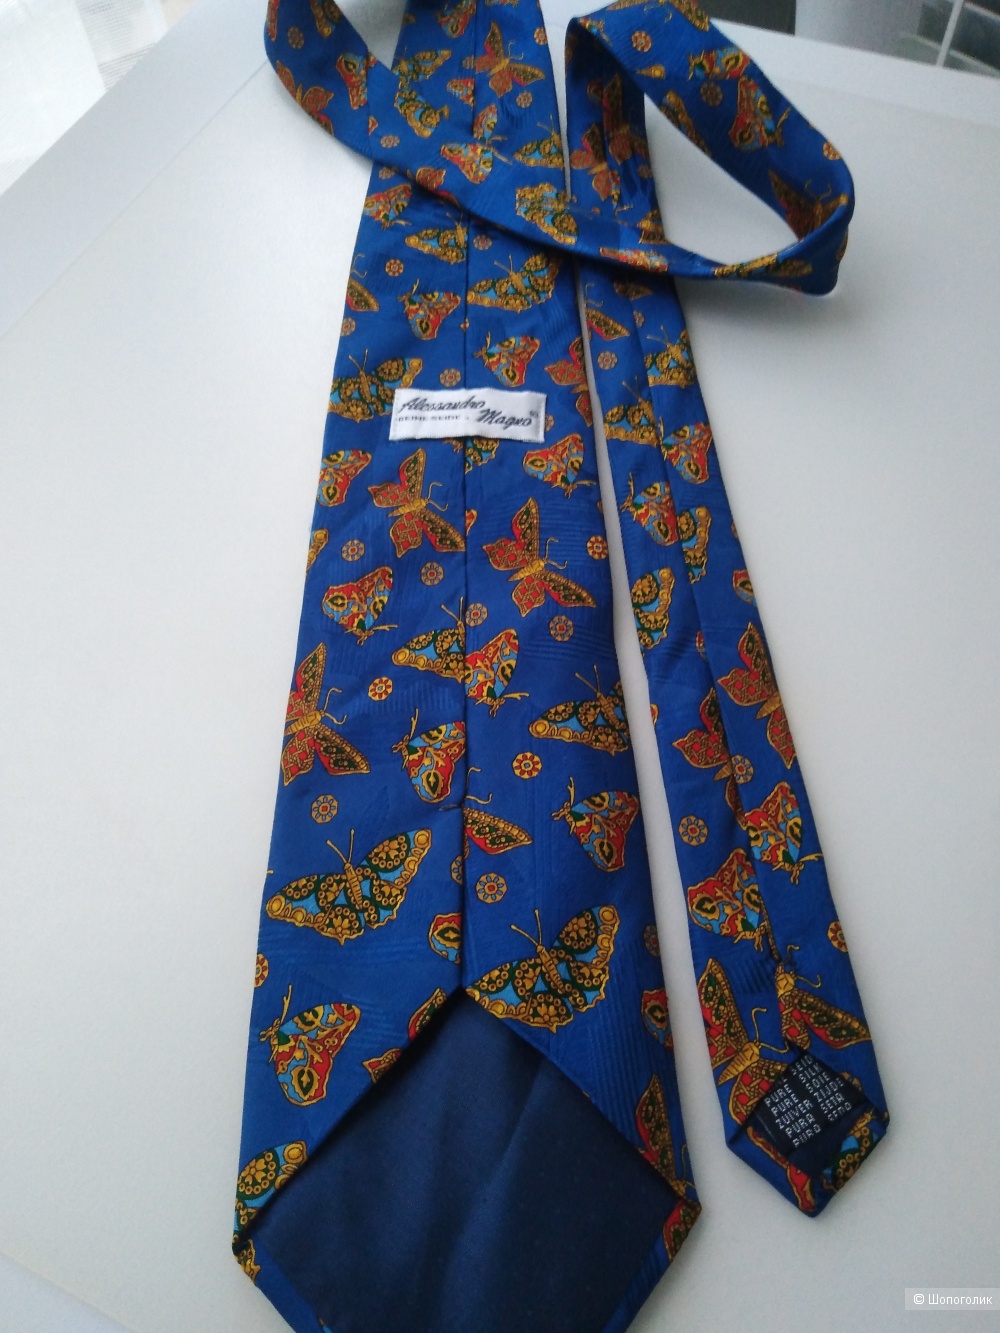 Сет галстуков CHARLESTON The Rack и другие. One size.